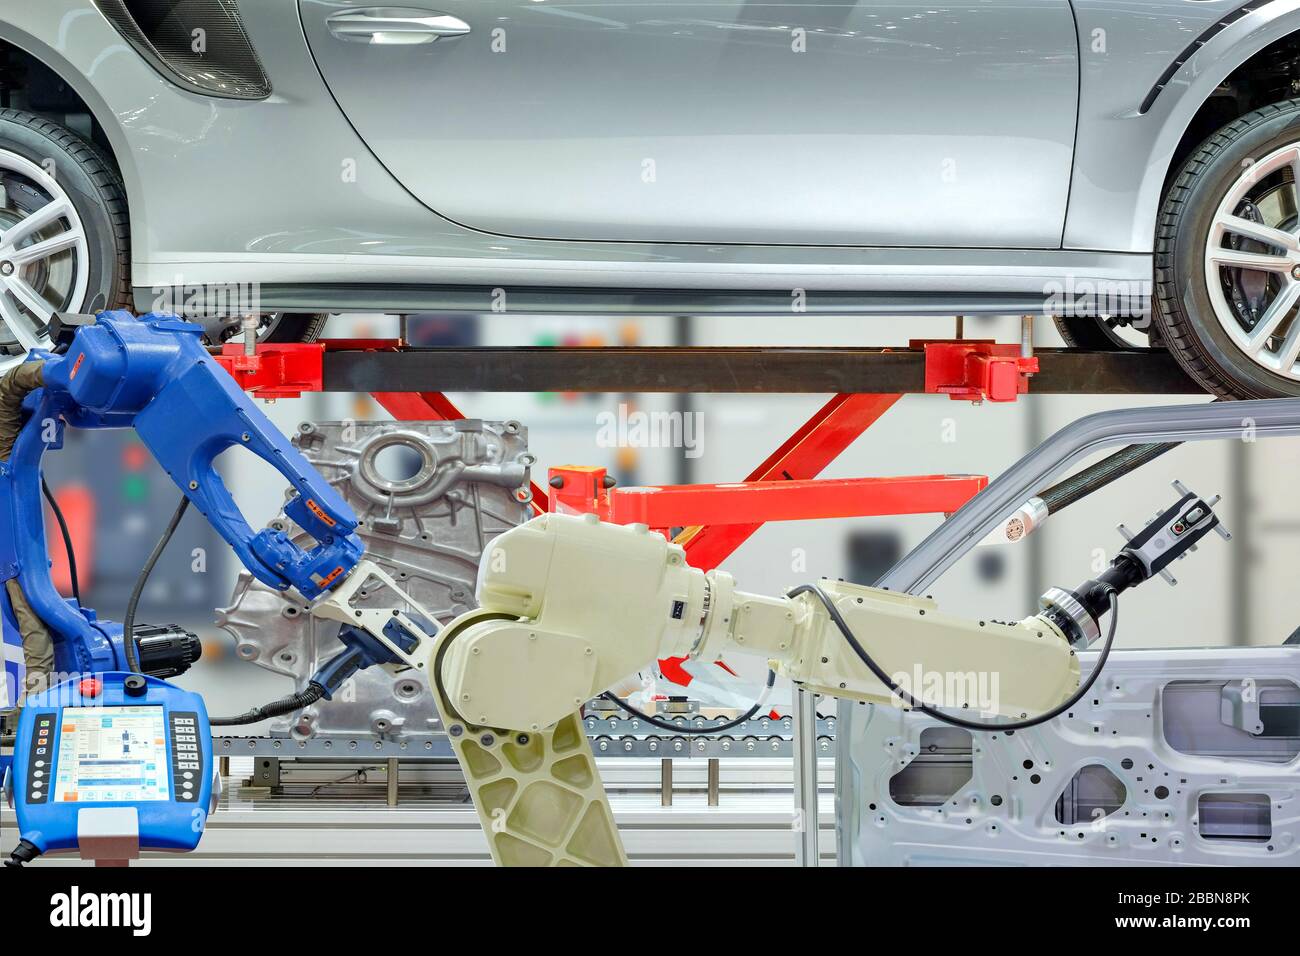 Industrielle Roboterscanning mit Autoteilen und Fernbedienung zum Einstellen von Programmen für die Arbeitsautomatisierung, Industrie 4.0 Stockfoto